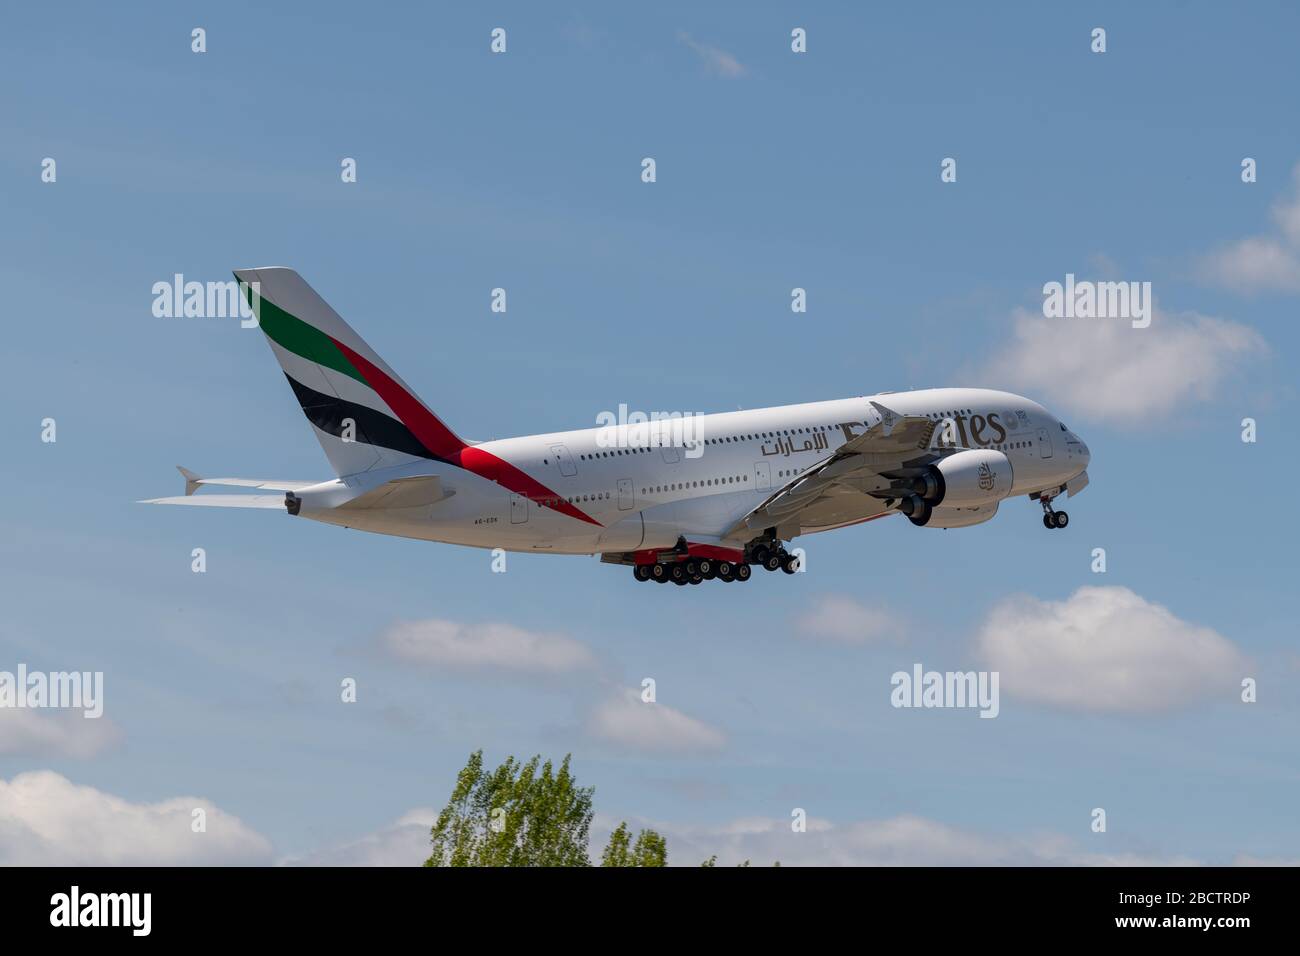 MADRID, SPAGNA - 14 APRILE 2019: L'aereo passeggeri Emirates Airbus A380 decolla dall'aeroporto internazionale Adolfo Suarez di Madrid-Barajas, in blu Foto Stock